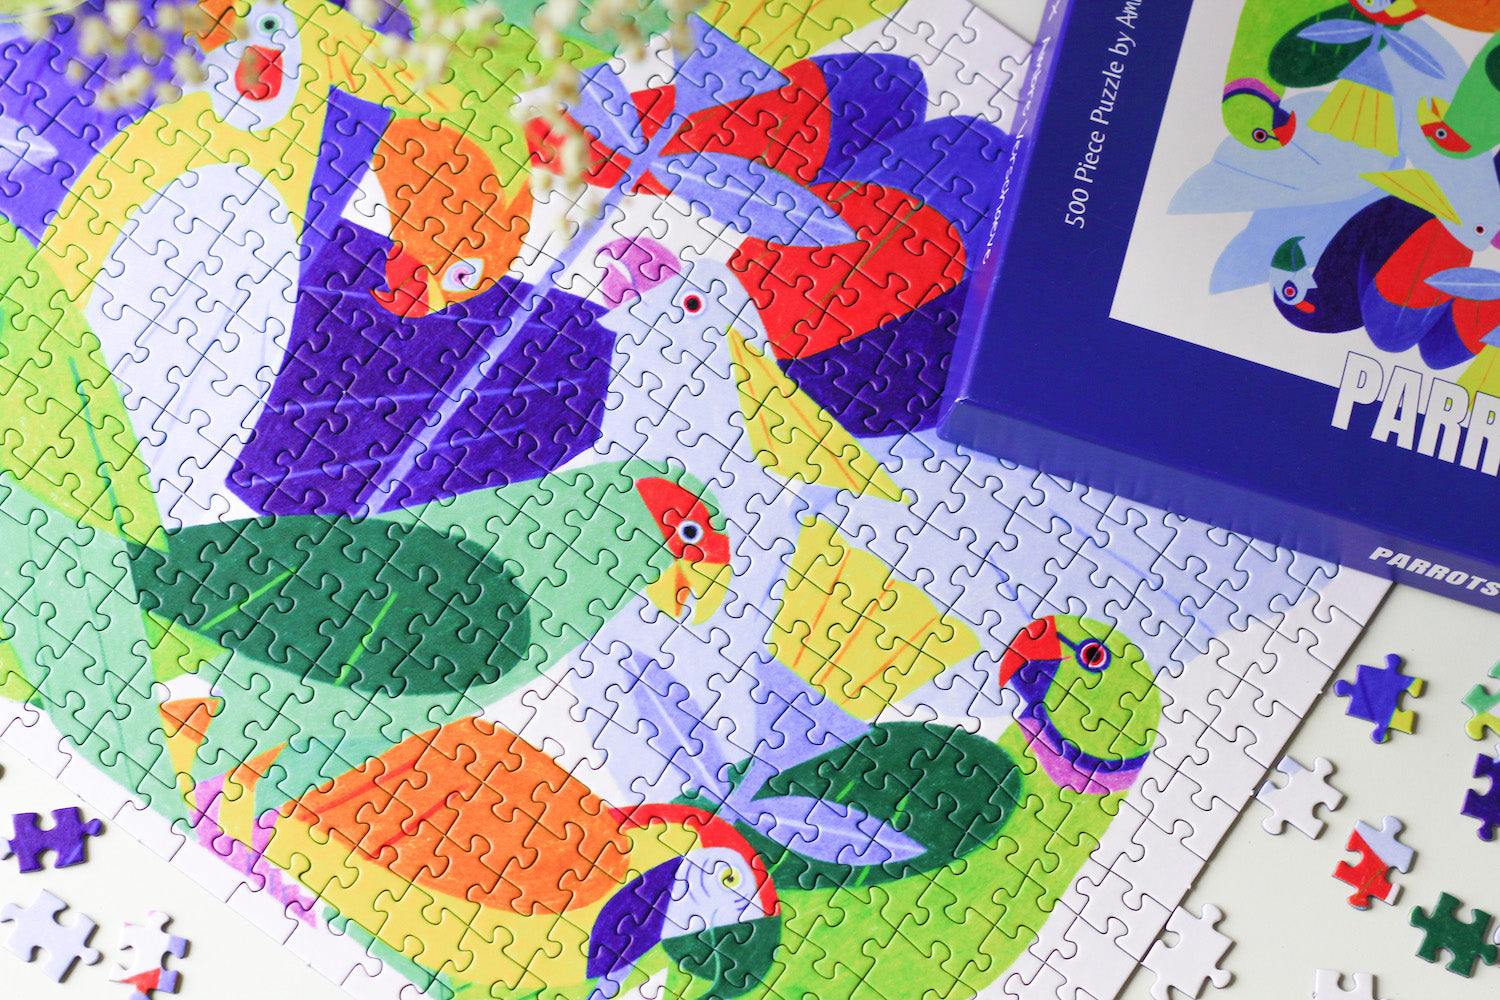 500-teiliges Parrots Puzzle, das viele bunte Papageien zeigt.